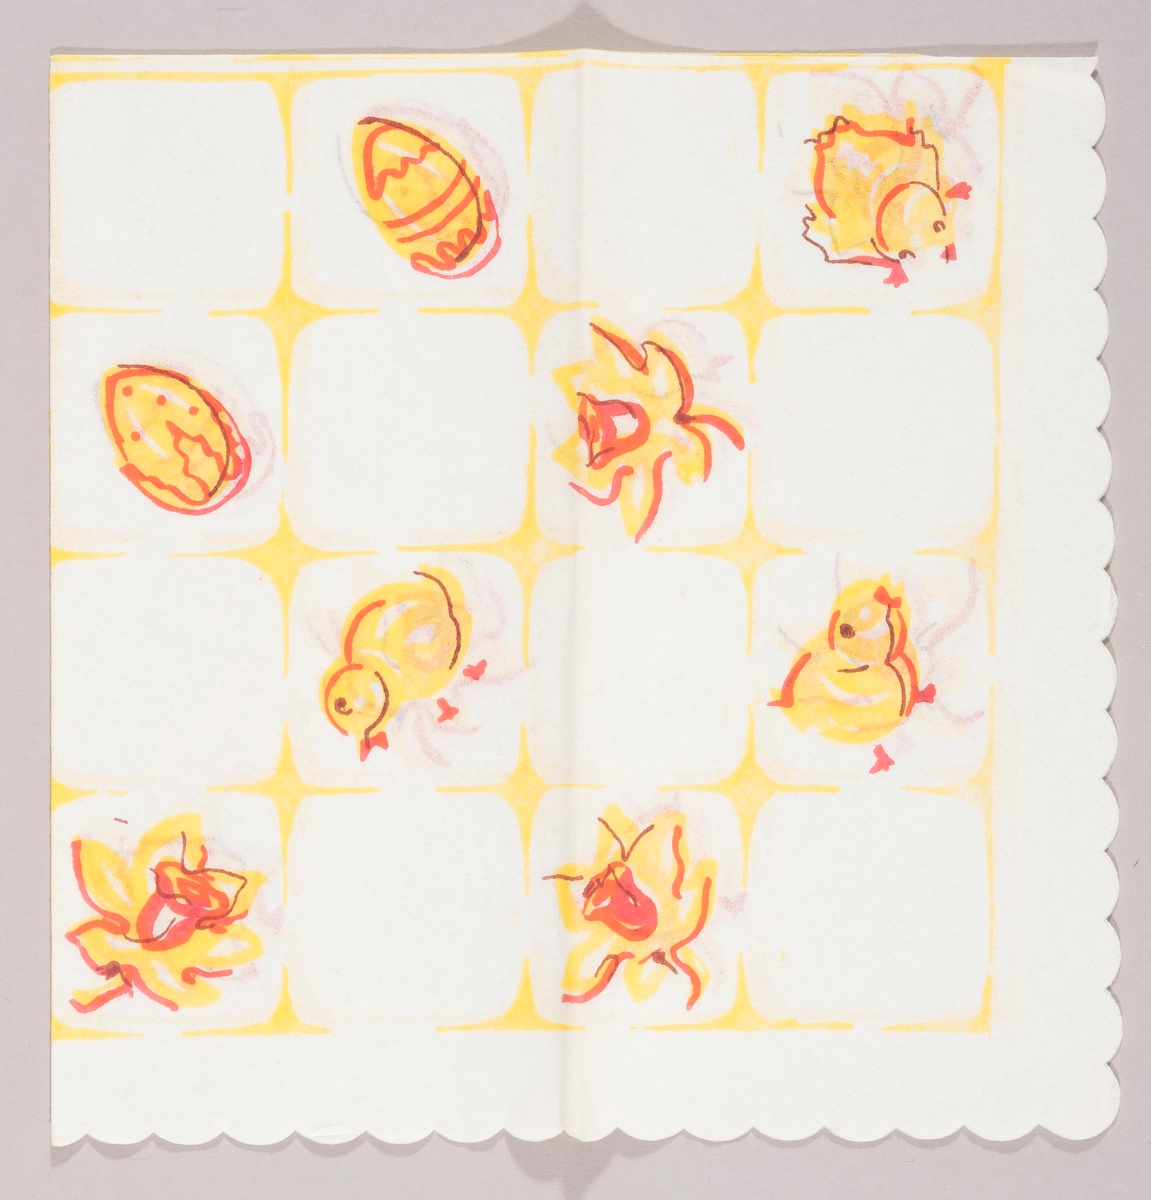 Gule påskekyllinger, gule påskeegg og gule påskeliljer satt inn i et firkantmønster.